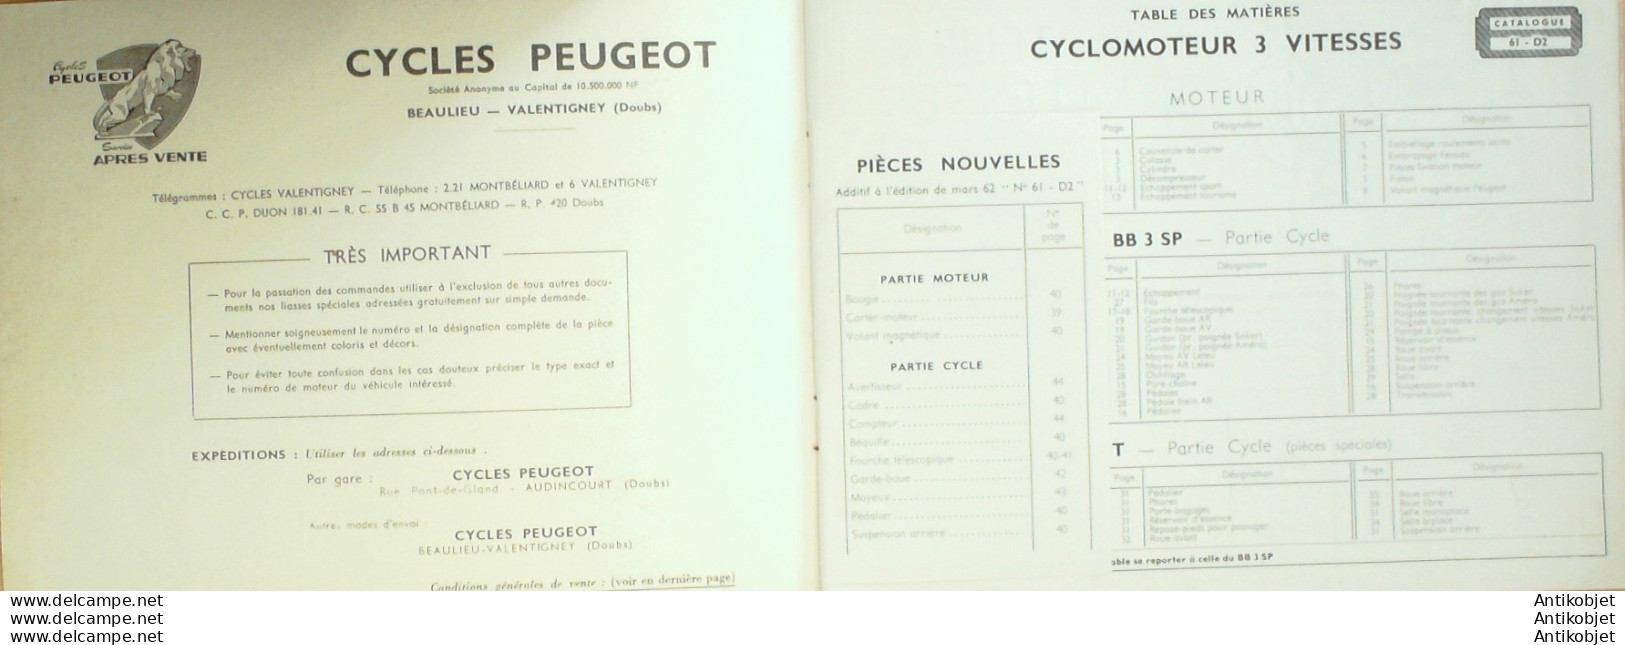 PEUGEOT B B 3 (Cyclomoteur 3 Vitesses Accessoires) 1963 - 1900 – 1949